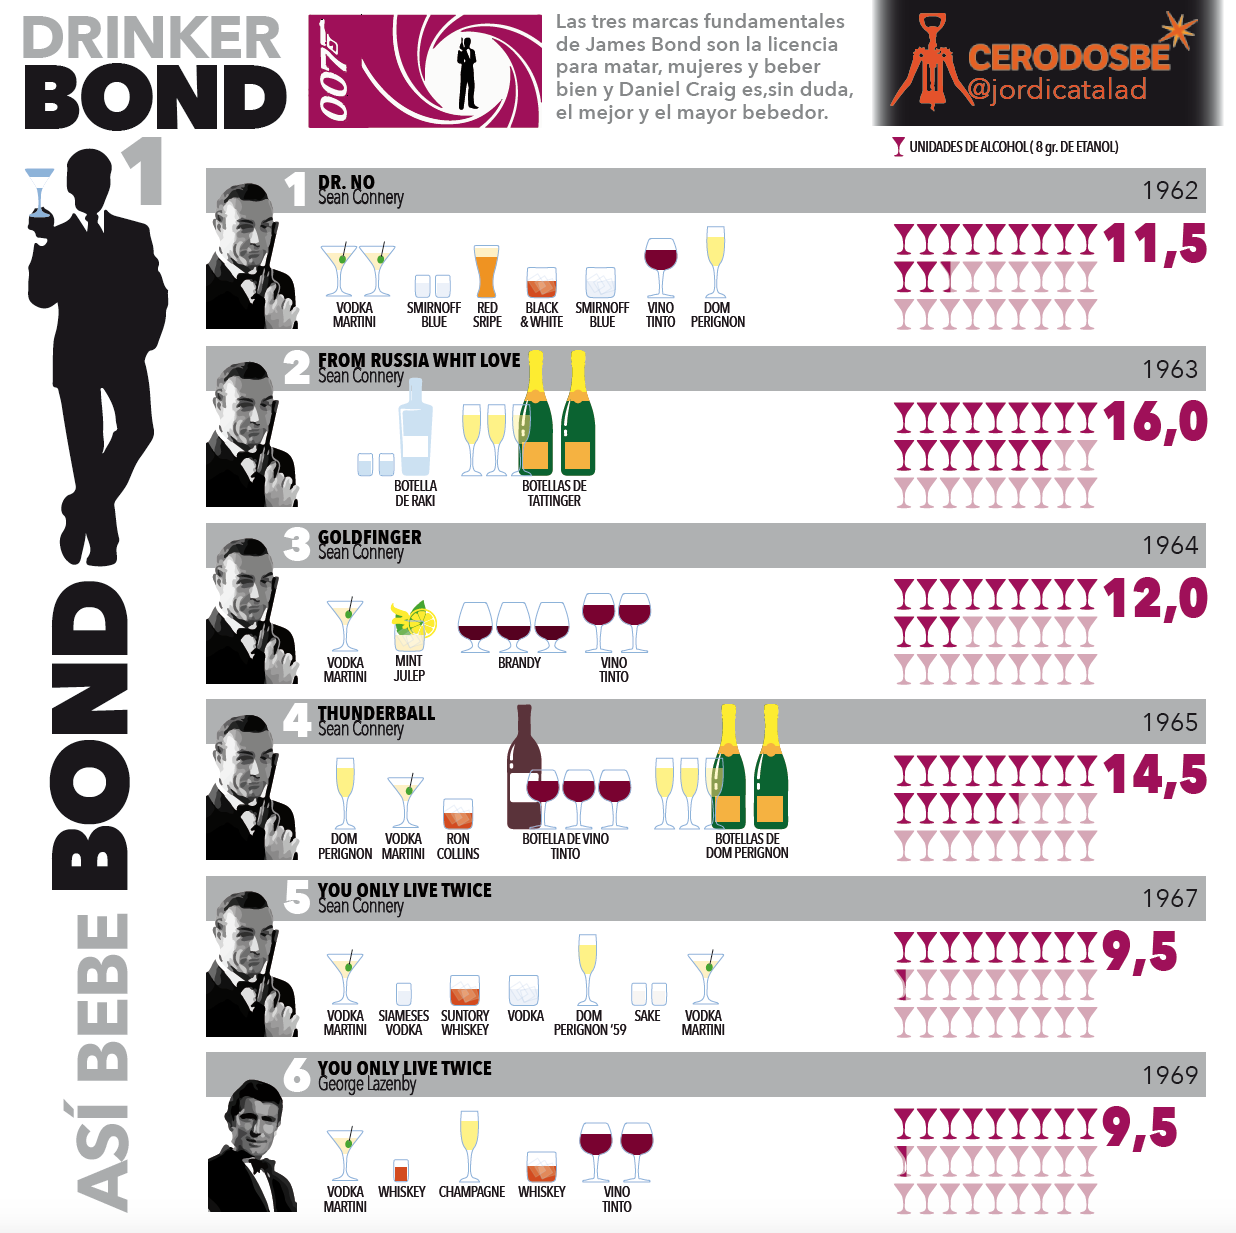 info 1 James Bond: con licencia para beber